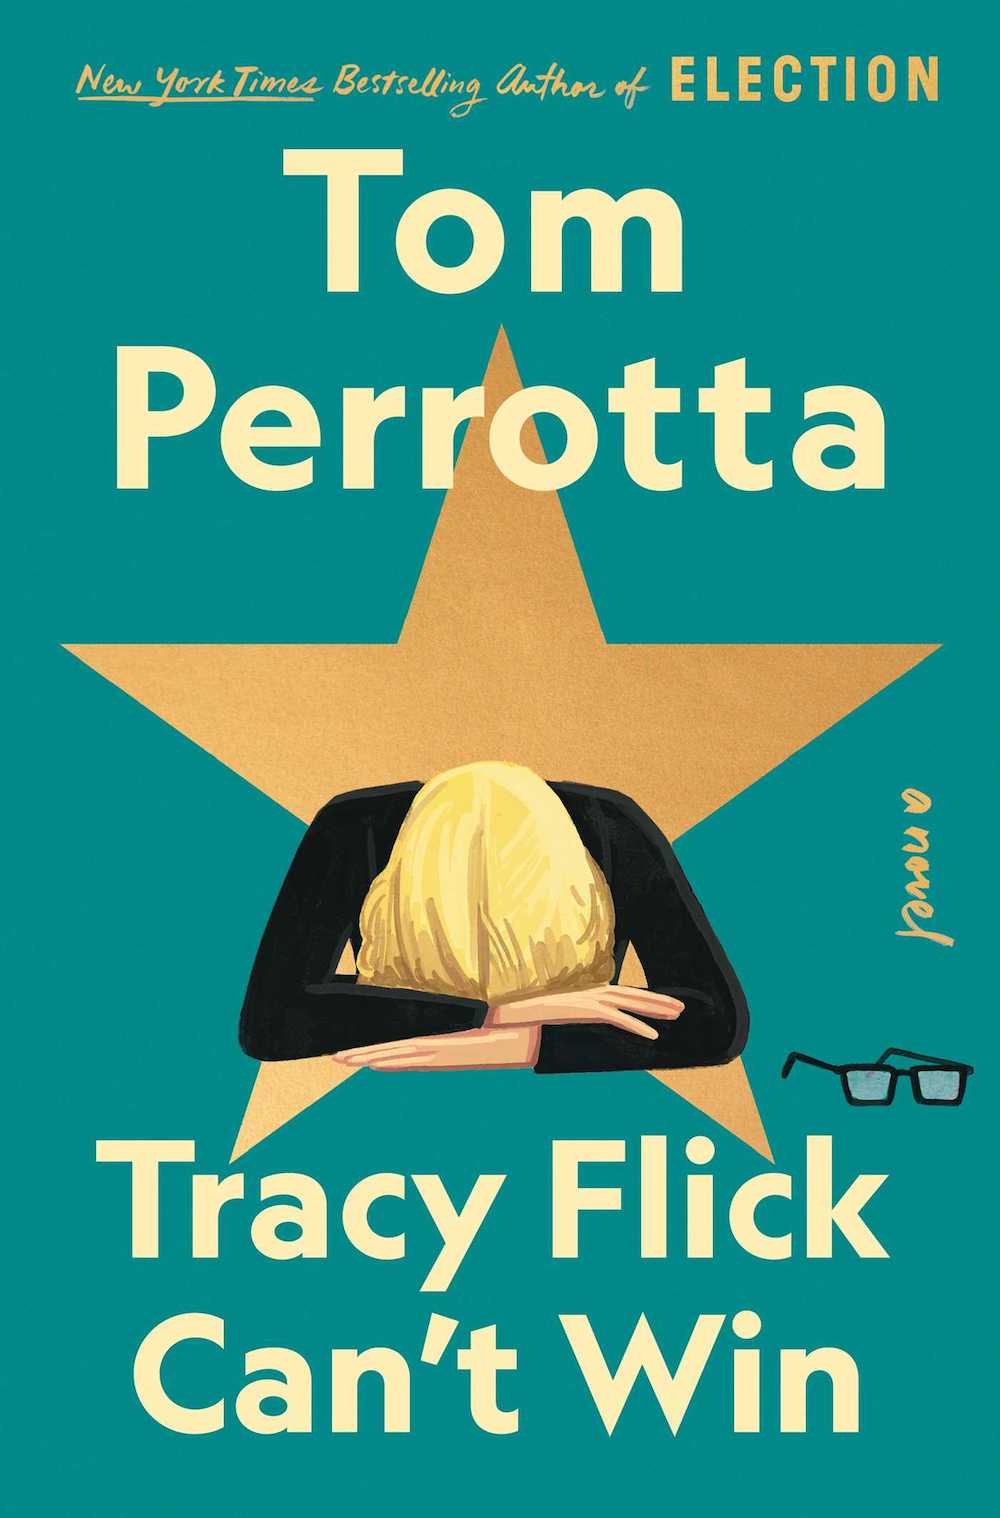 La couverture du livre du printemps 2022, Tracy Flick Can't Win, représentant une illustration d'une femme avec la tête enfouie dans ses avant-bras, des lunettes à ses côtés